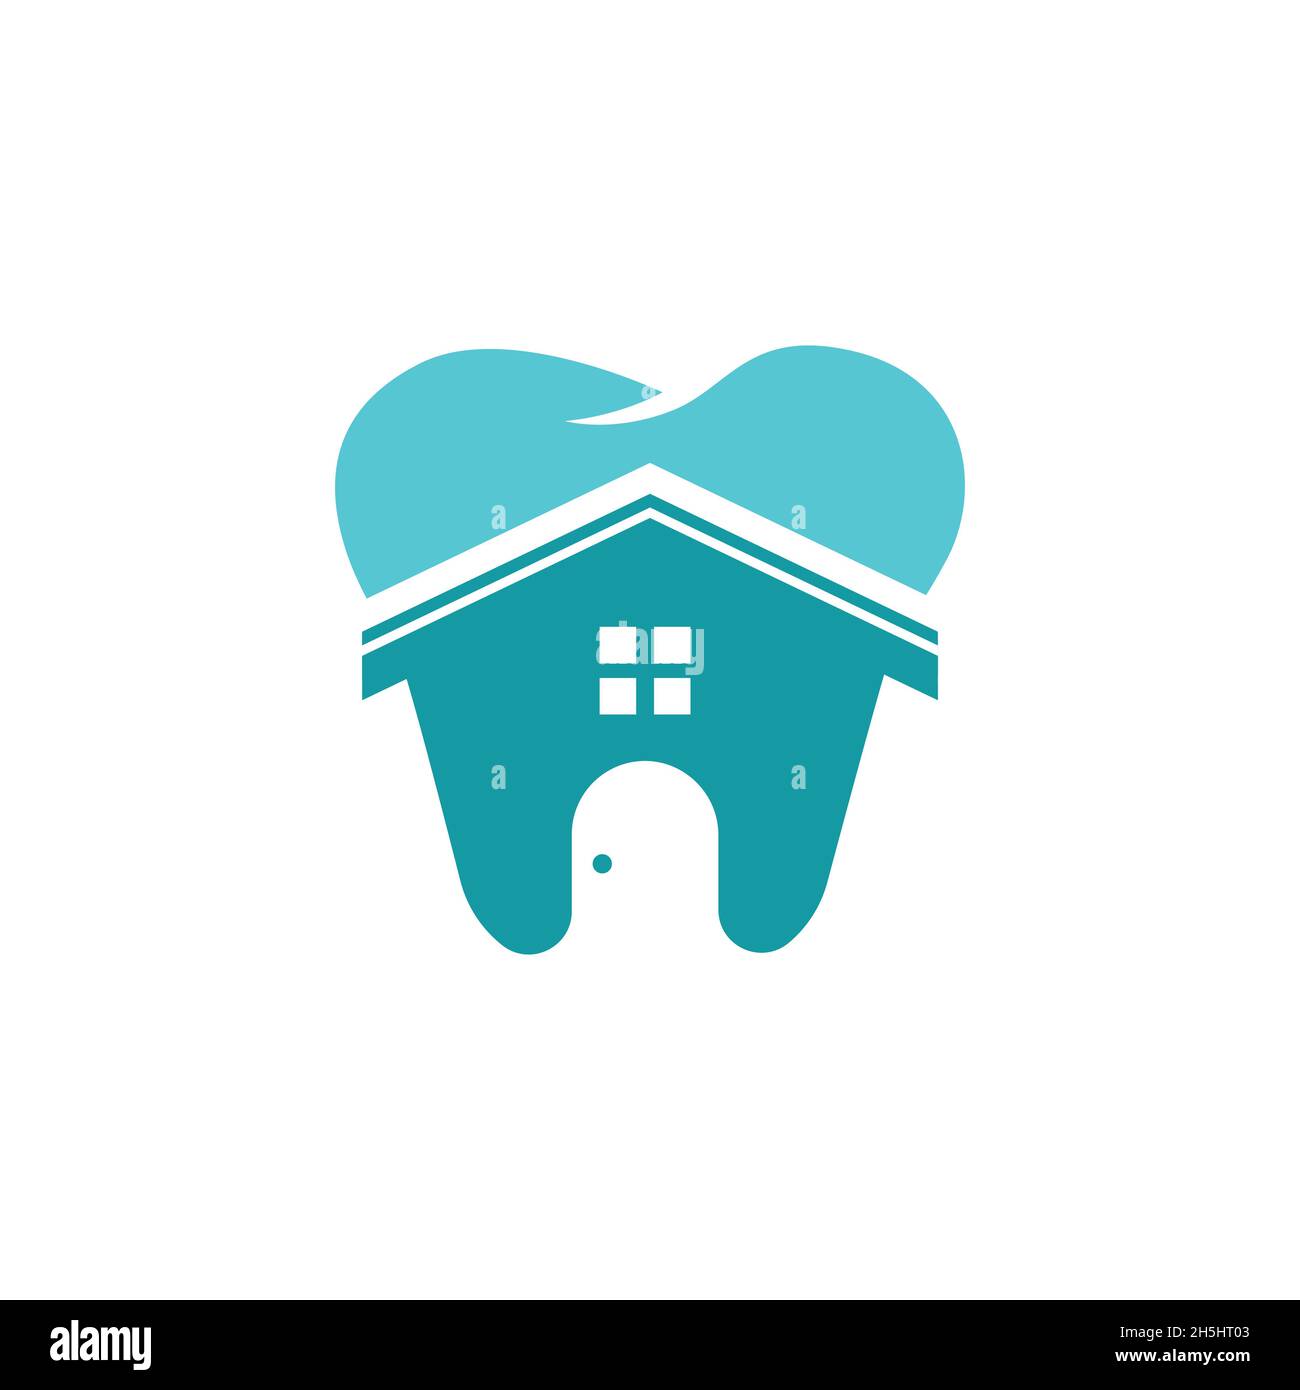 illustrazioni vettoriali, logo creato da una combinazione di logo odontoiatrico e di home clinic. Illustrazione Vettoriale